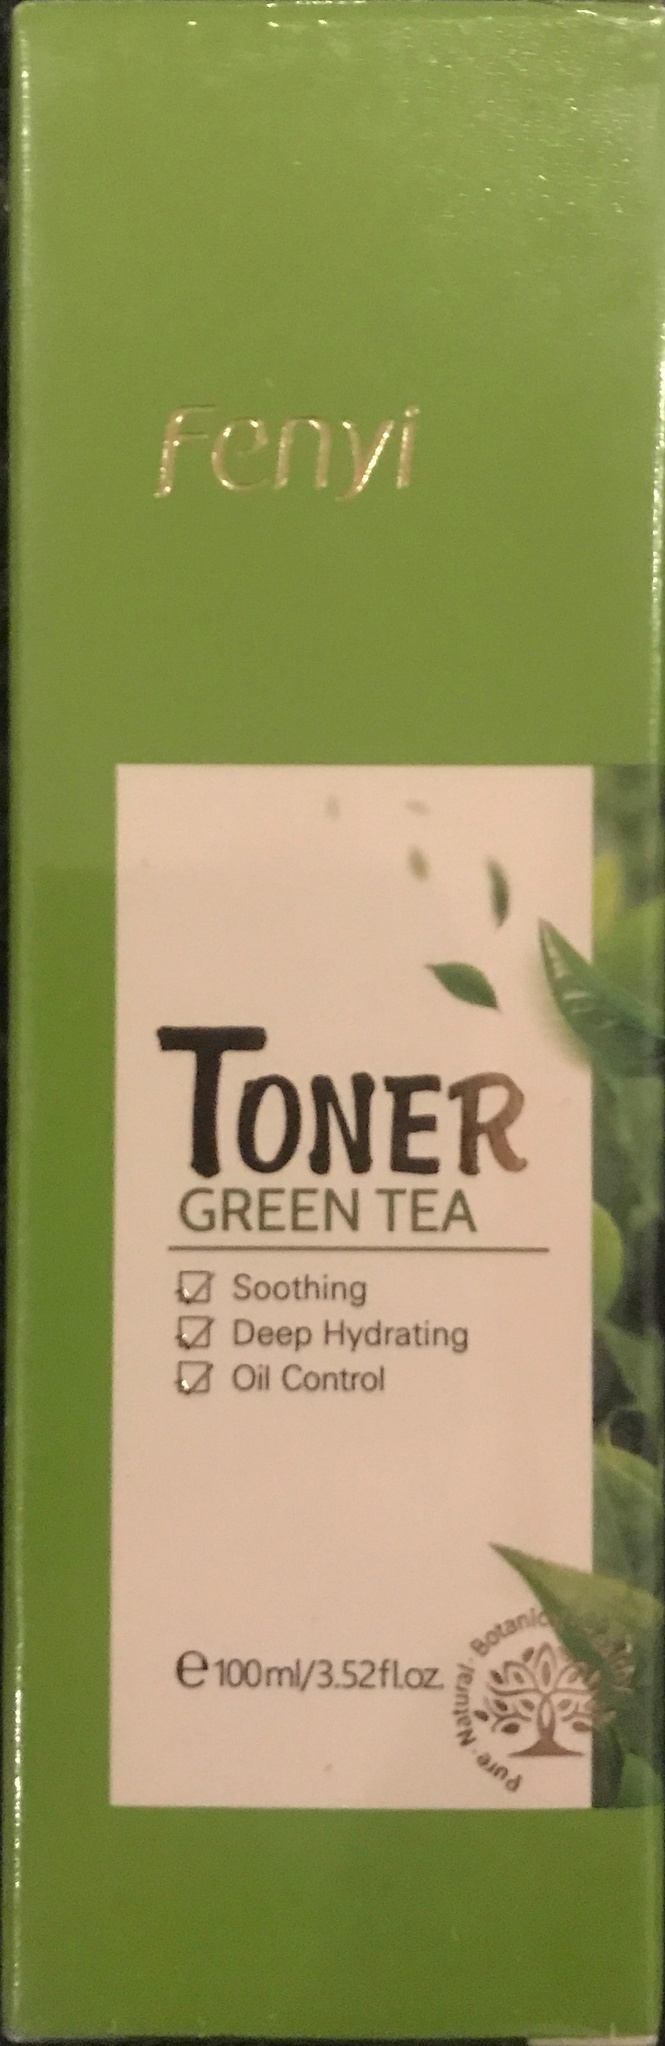 Fenyi Toner Green Tea